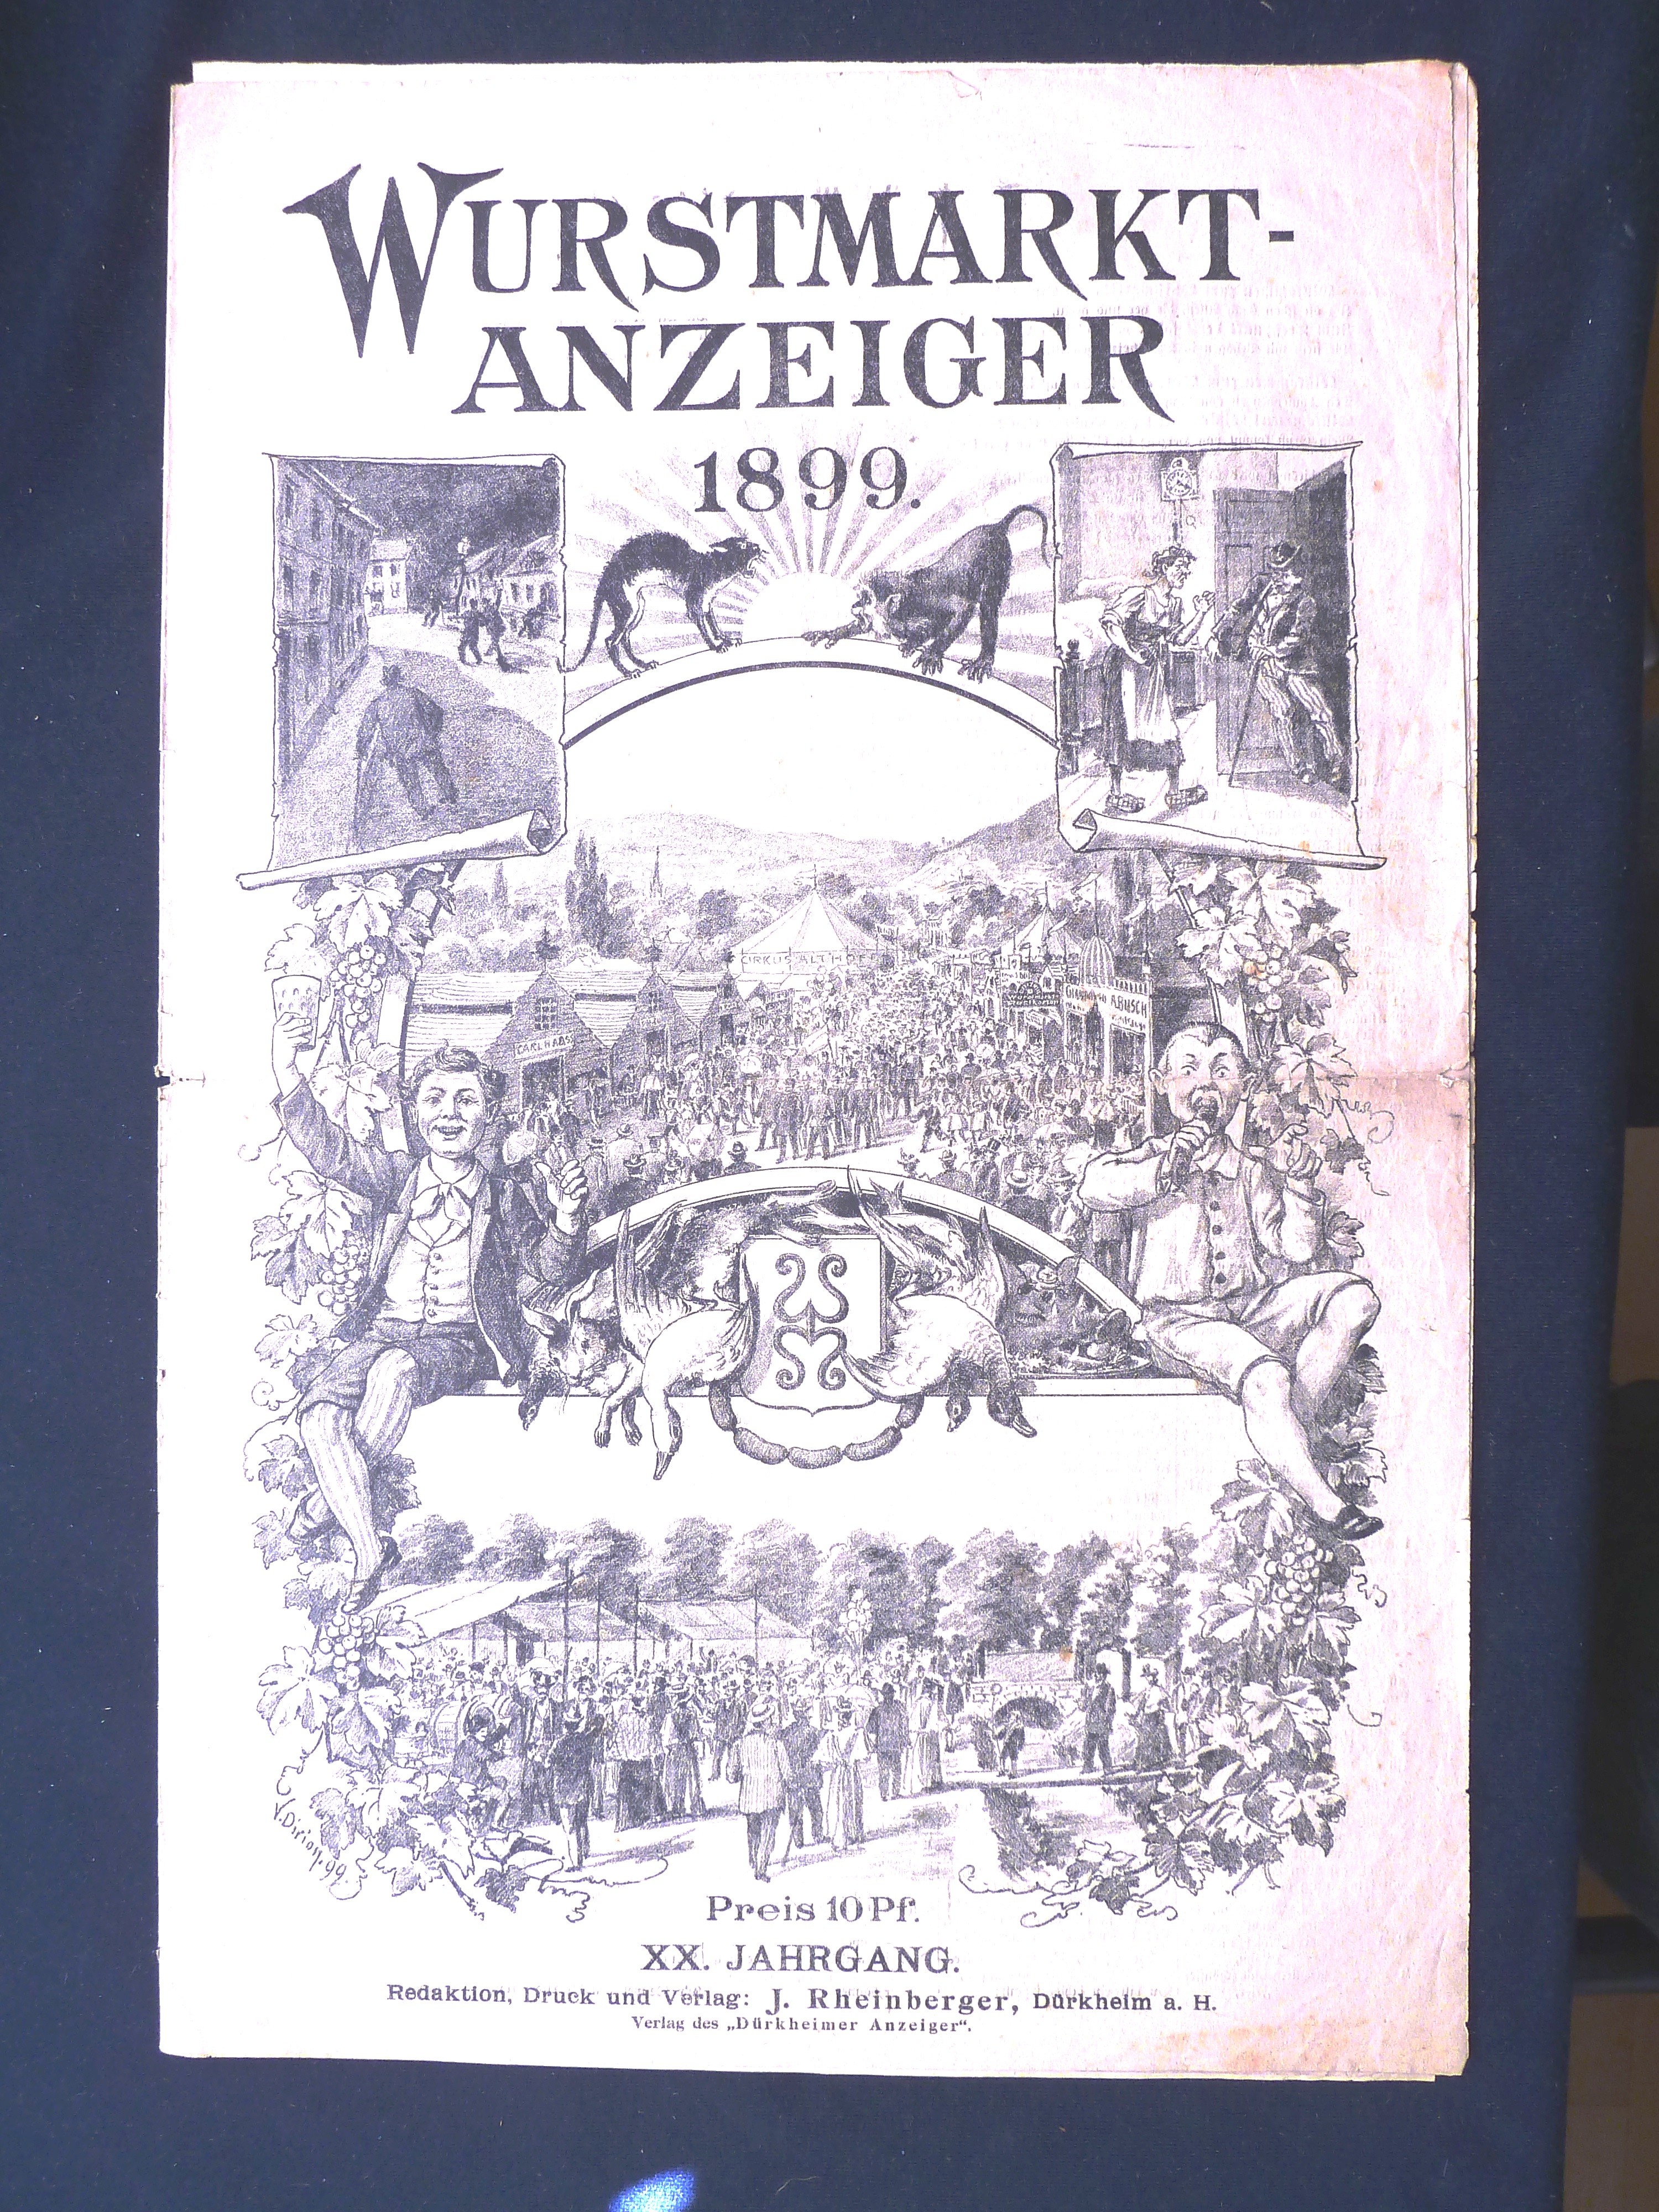 Zeitung; Anzeiger: "Wurstmarkt-Anzeiger"; J. Rheinberger, V. Dirion; Dürkheim a/H.; 1899 (Stadtmuseum Bad Dürkheim, Museumsgesellschaft Bad Dürkheim e.V. CC BY-NC-SA)